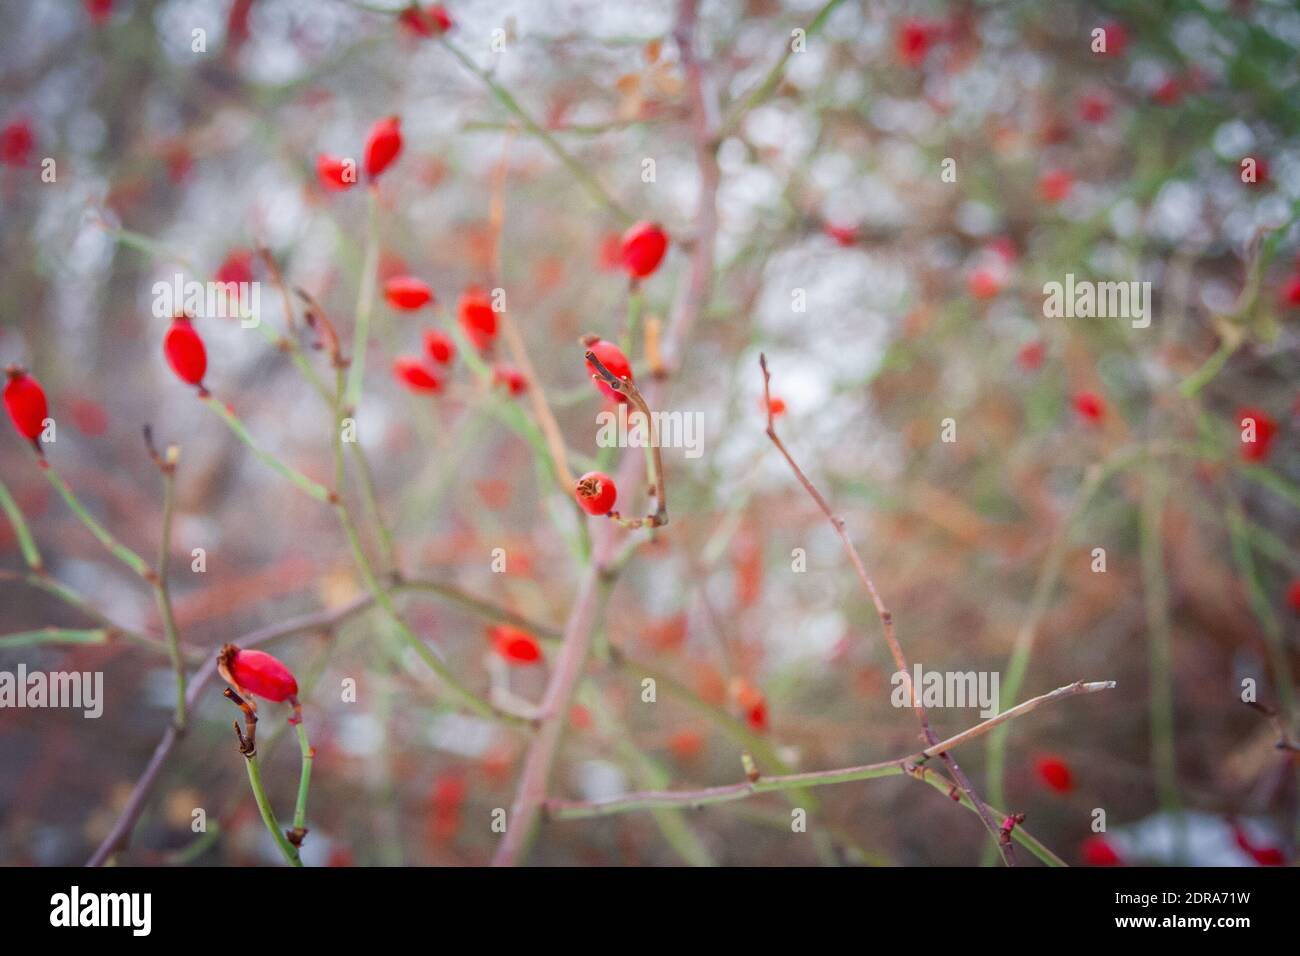 Winter berries Stock Photo